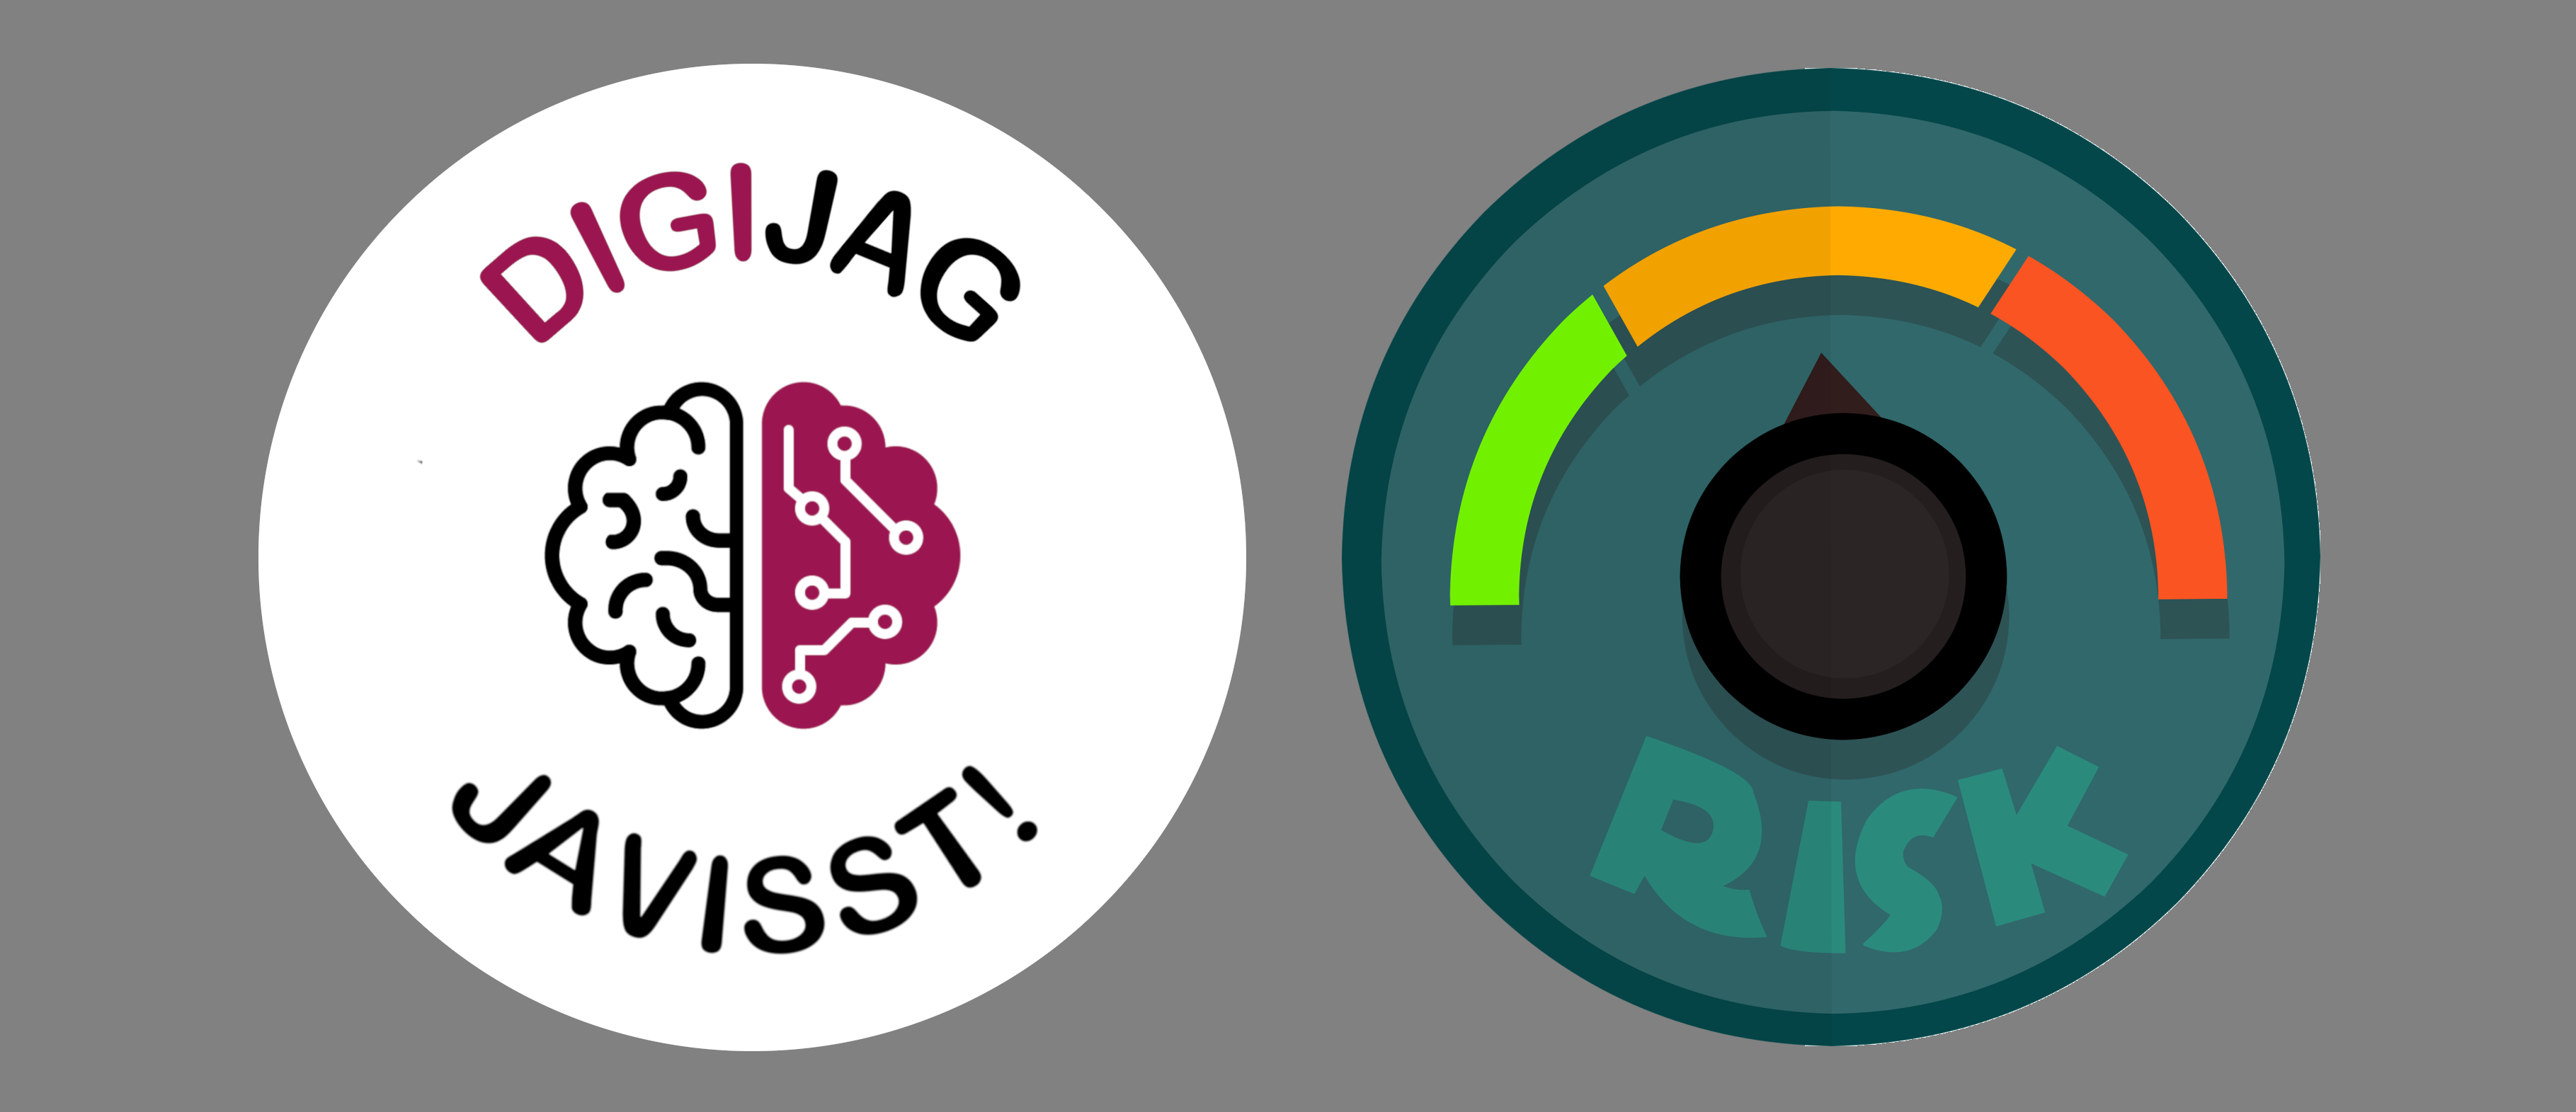 DigiJag Javisst-logotyp plus Riskmätare av Mohamed Hassana från Pixabay